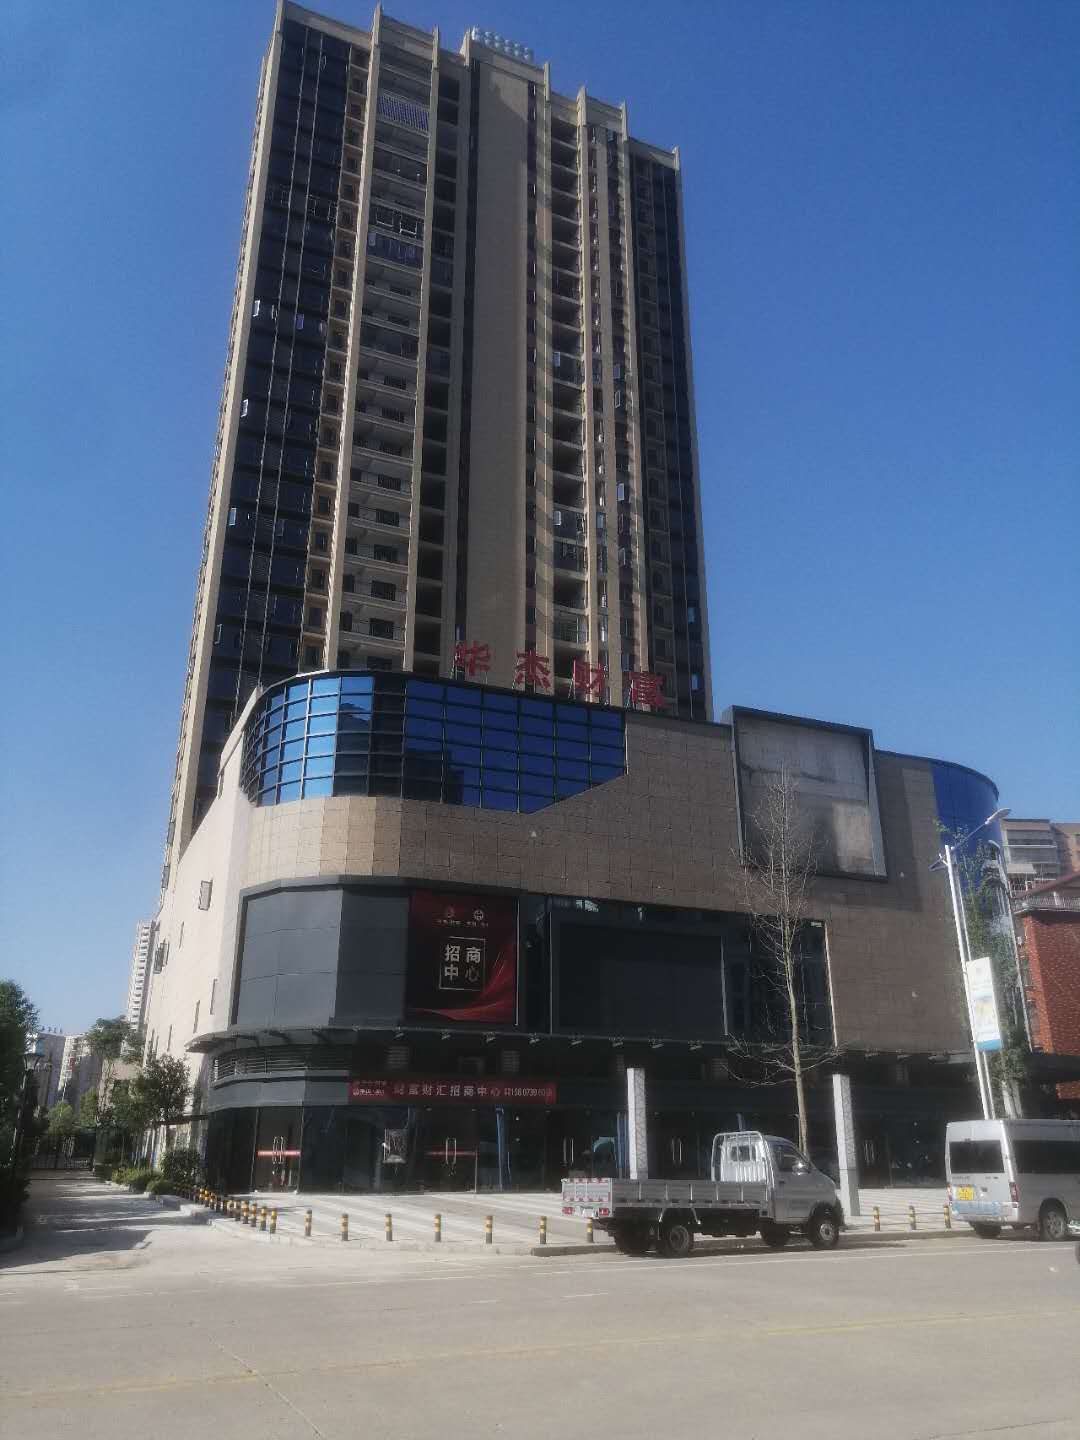 45万平米购物中心上海中信泰富广场对比关注开业1年/1